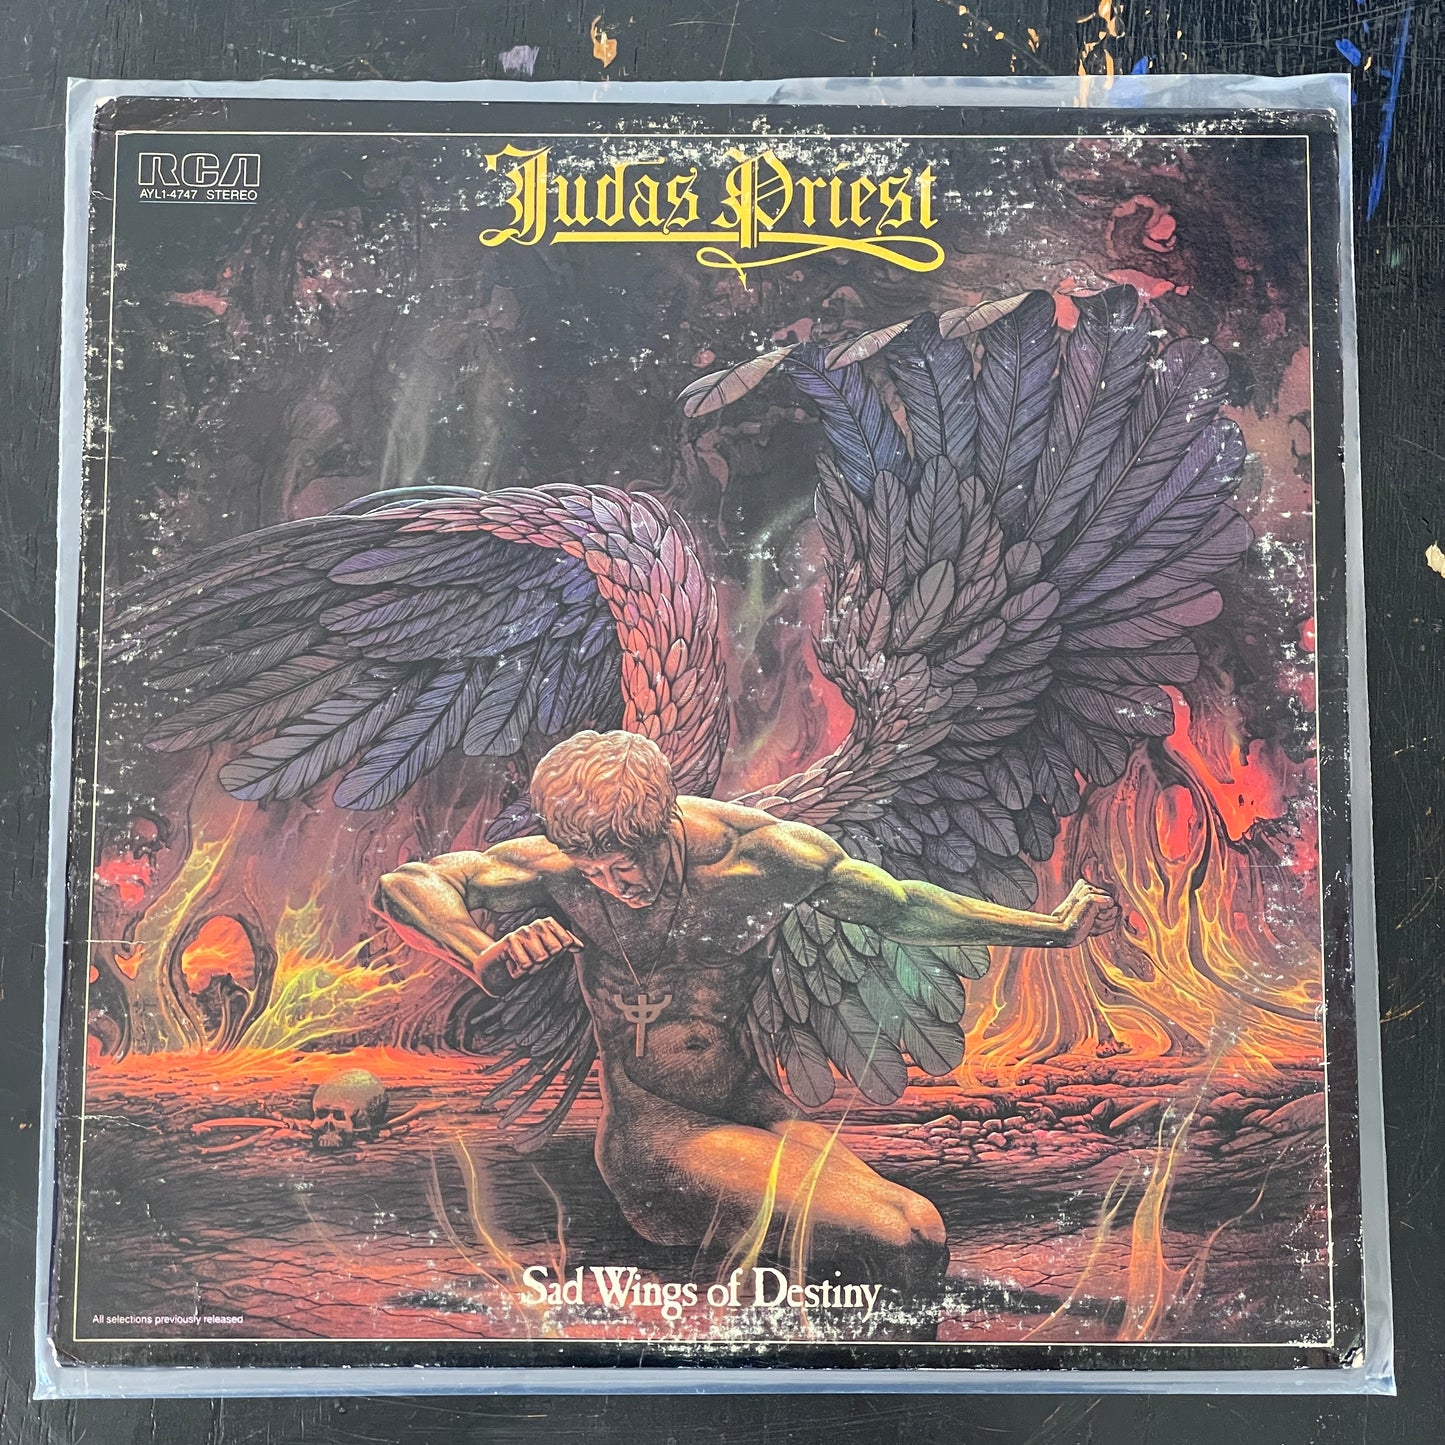 Judas Priest - Sad Wings of Destiny reissue LP (used)